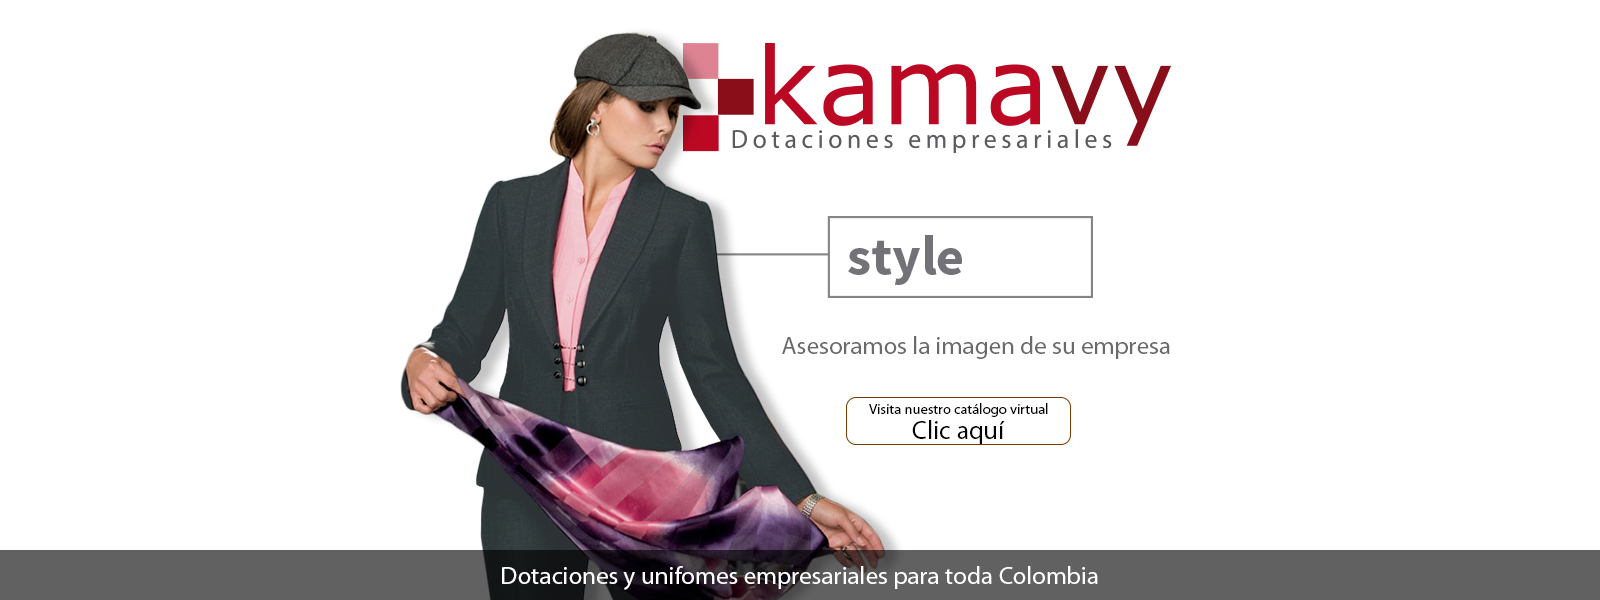 Dotaciones empresariales y uniformes de oficina para toda Colombia